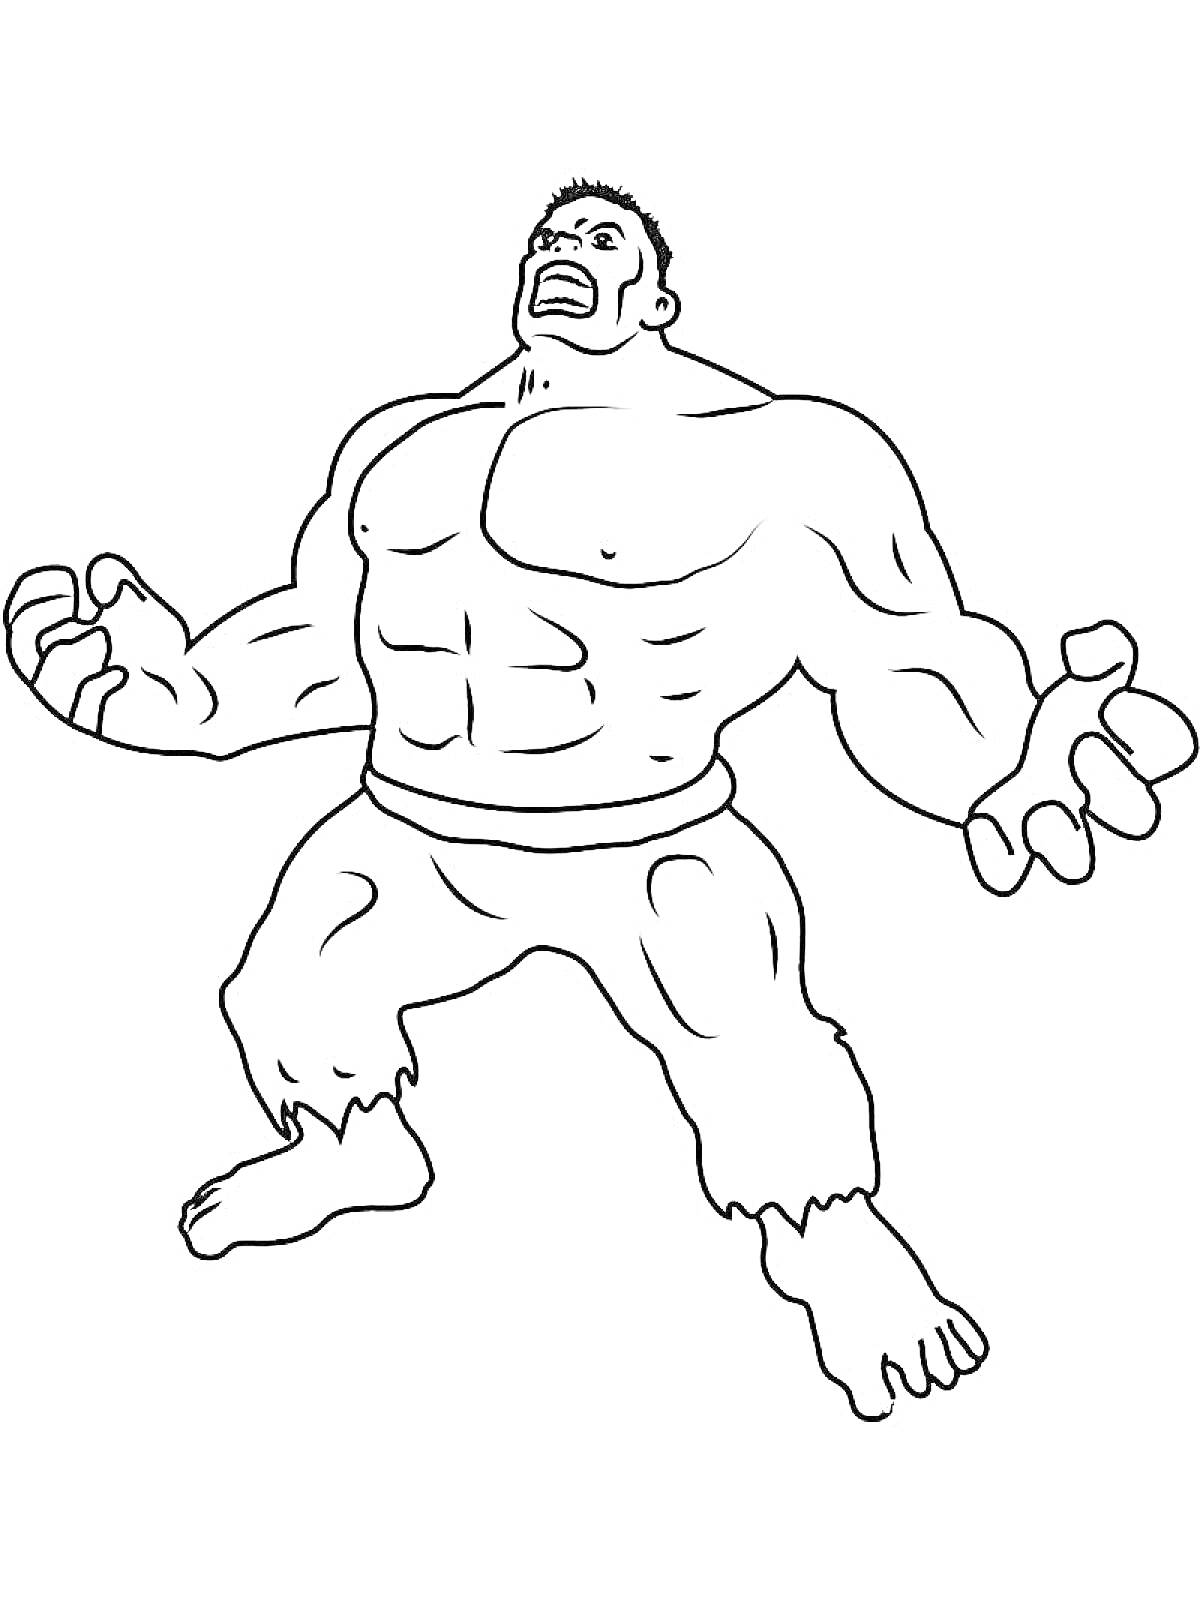 Раскраска Халк с поднятыми руками и согнутыми коленями